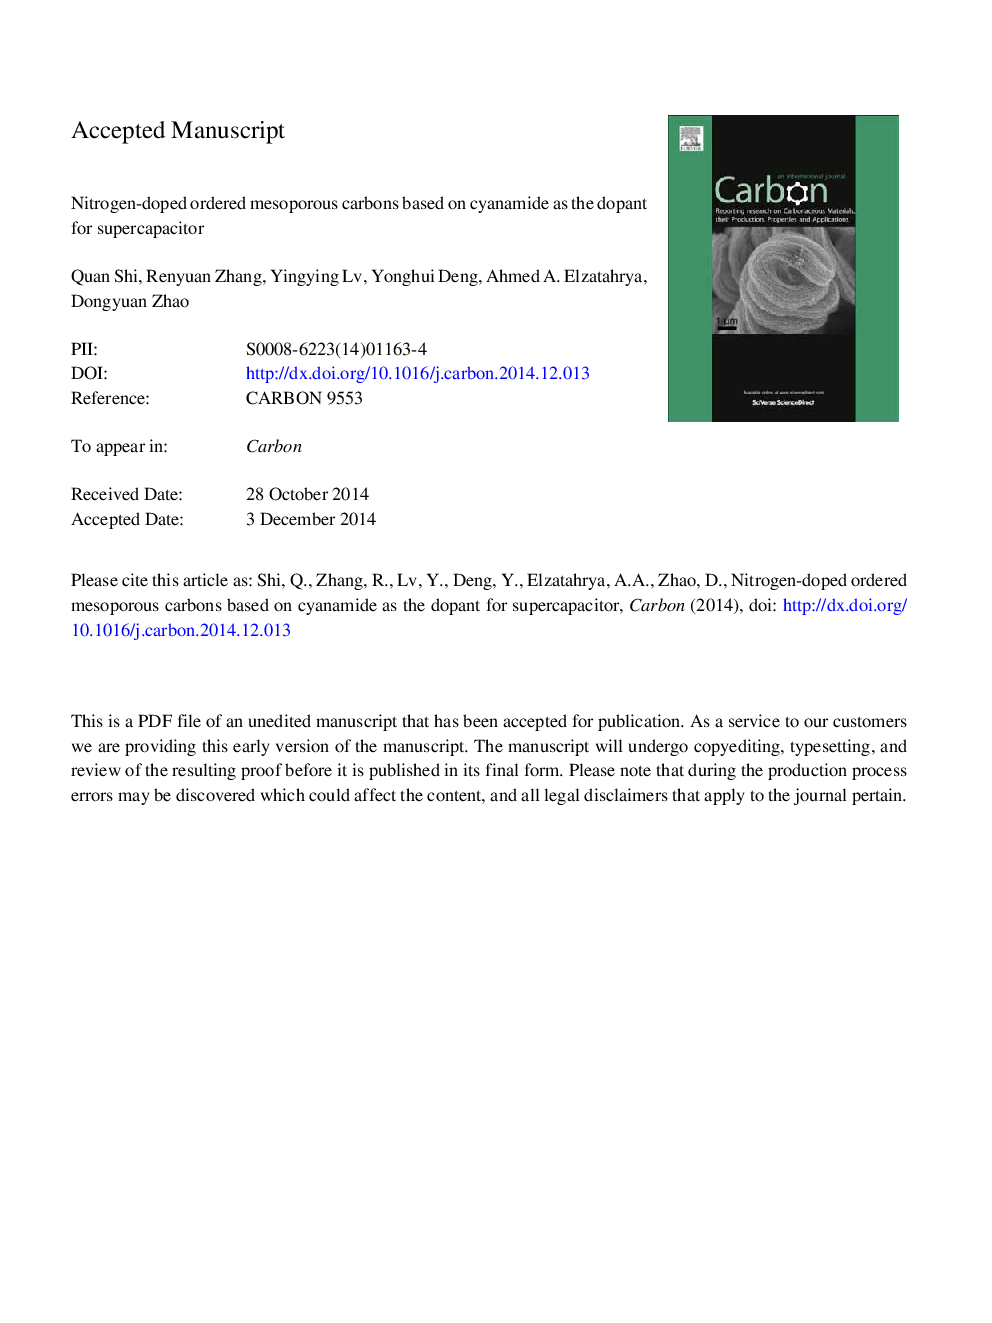 کربن های مشروب پراکسید نیتروژن با استفاده از سیانامید به عنوان افزودنی برای مخزن سوپراسپرت 